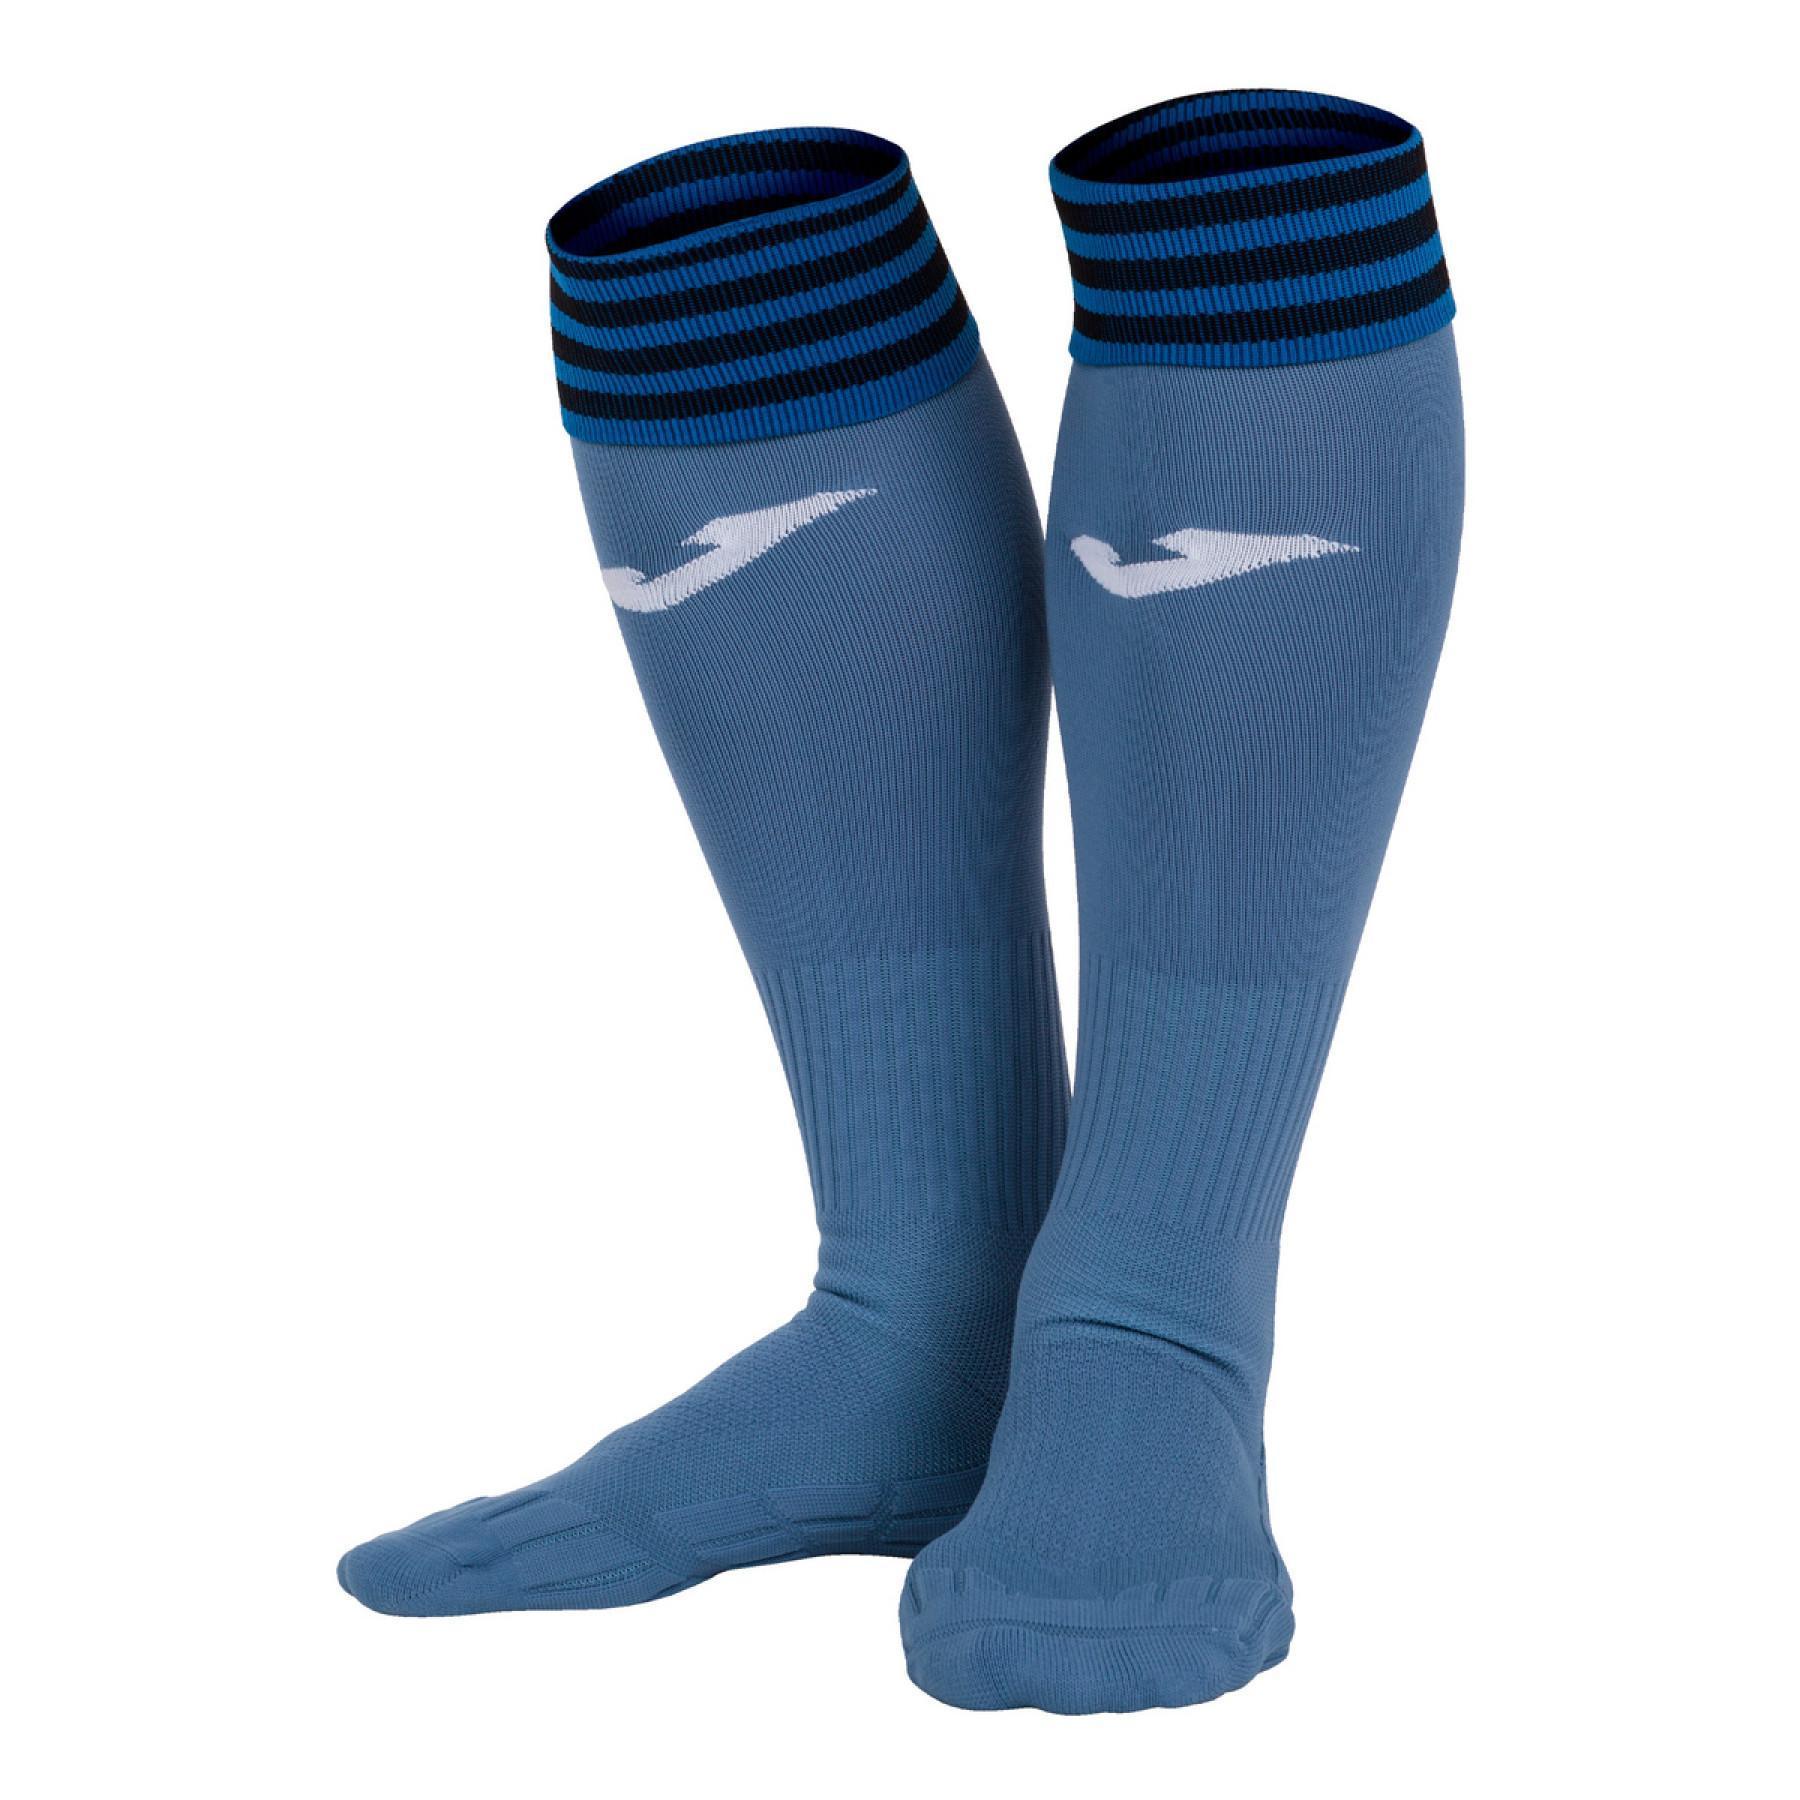 Third socks Atalanta Bergame 2020/21